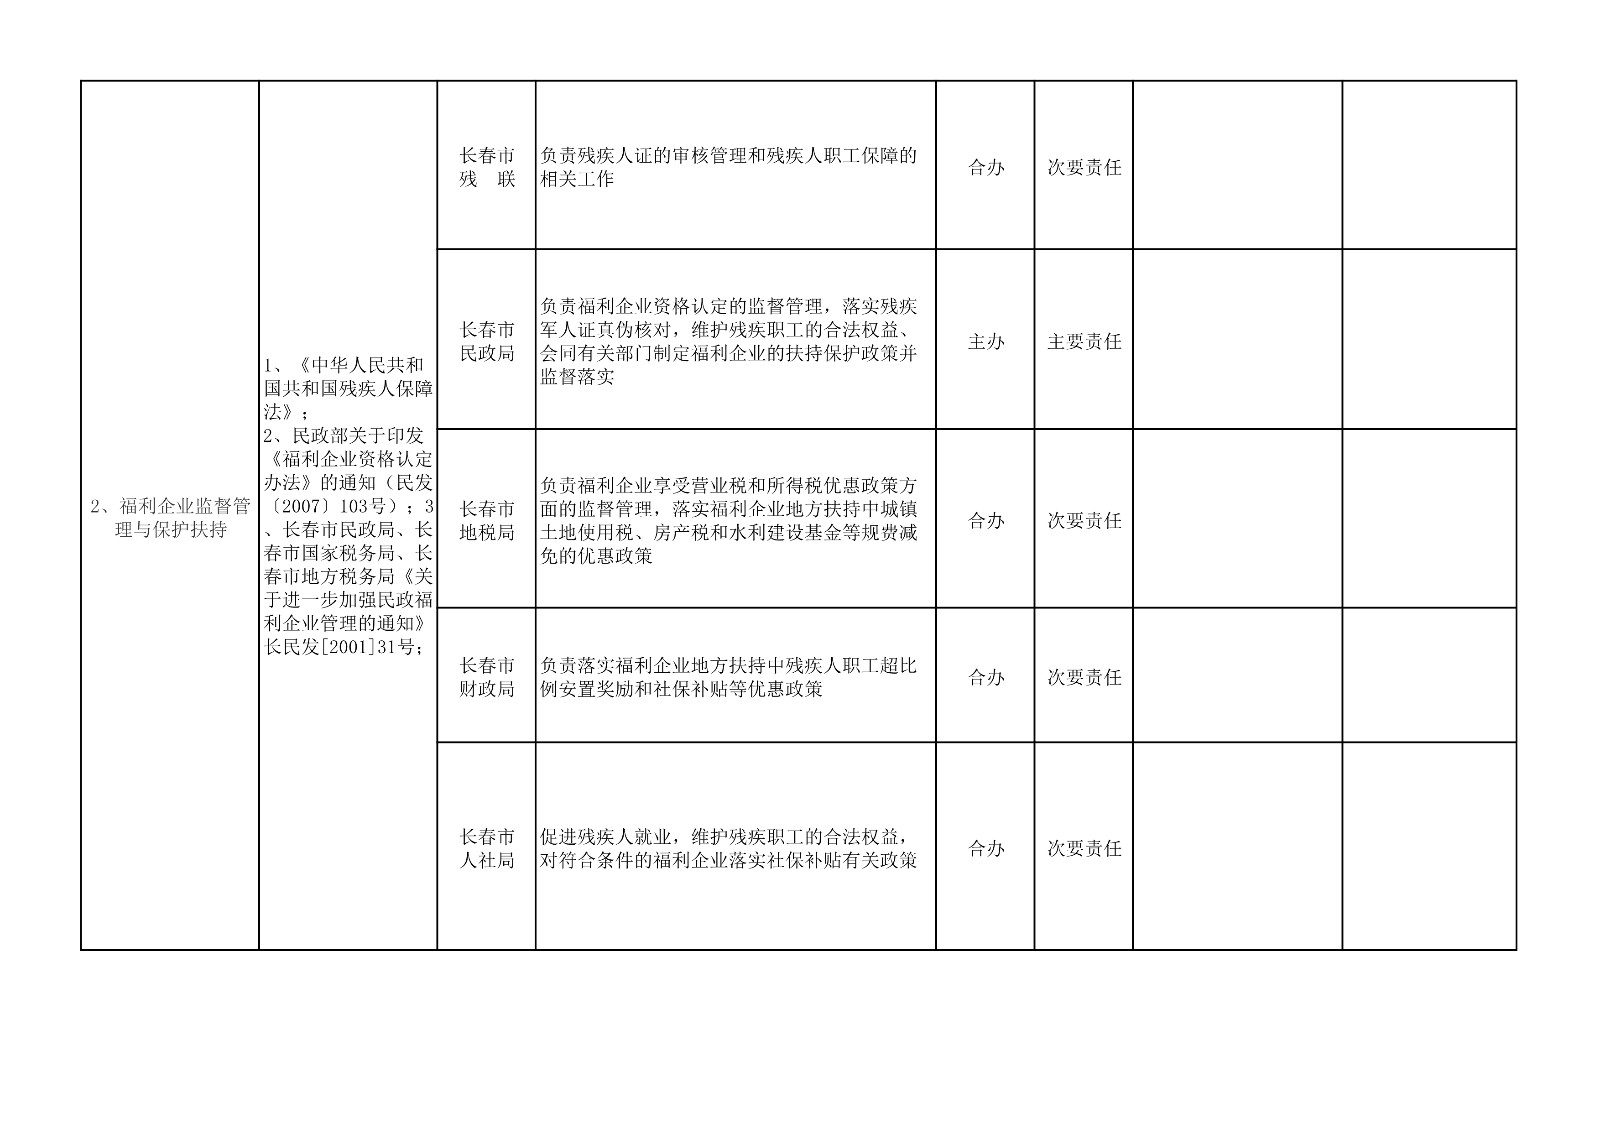 长春市残联与相关部门职责边界审核登记表_2.jpg